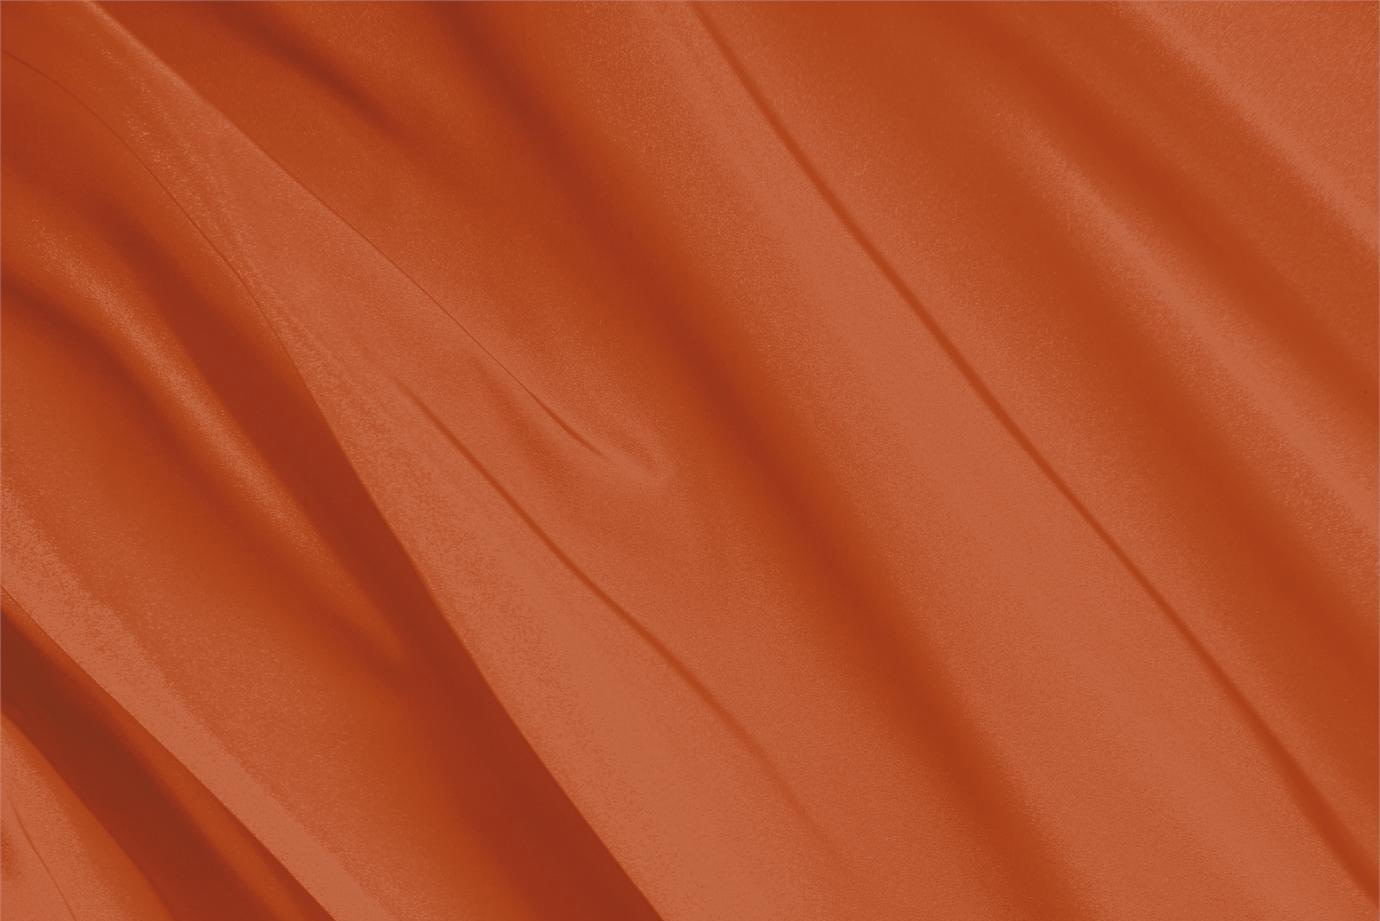 Tessuto Radzemire Arancione Mandarino in Seta per Abbigliamento UN000305